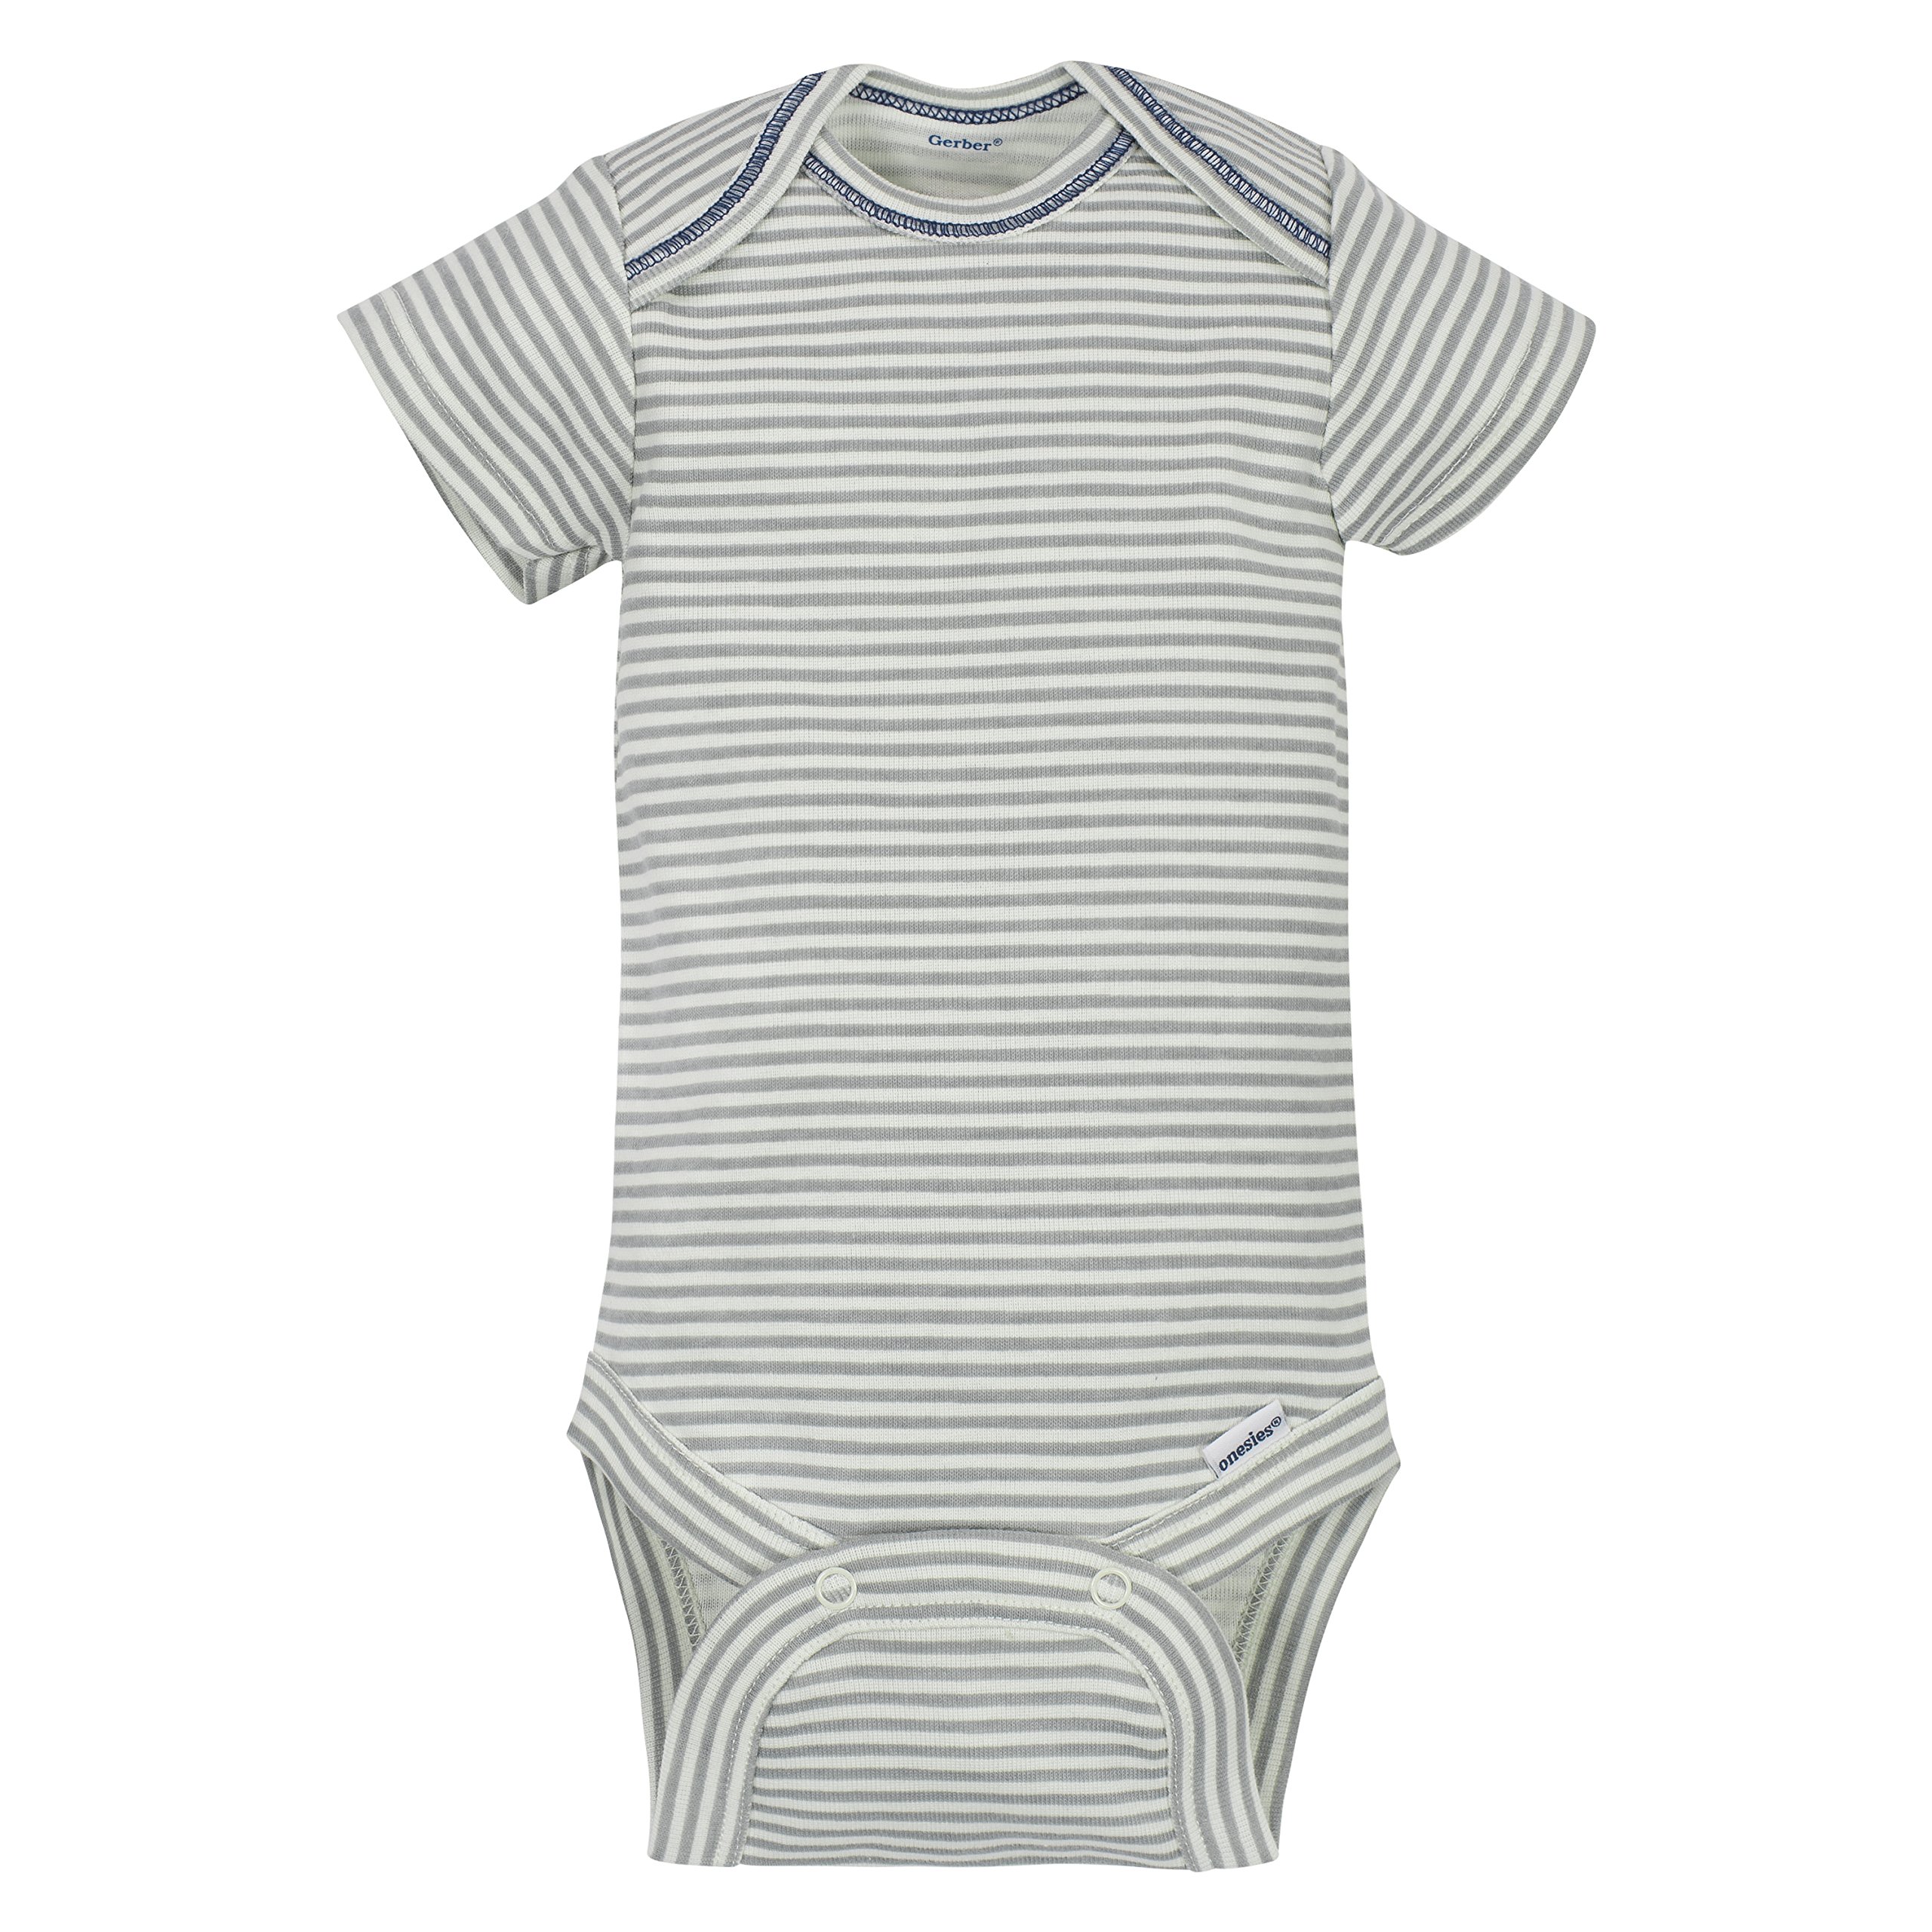 Gerber baby-boys 5-pack Short Sleeve Variety Onesies Bodysuits